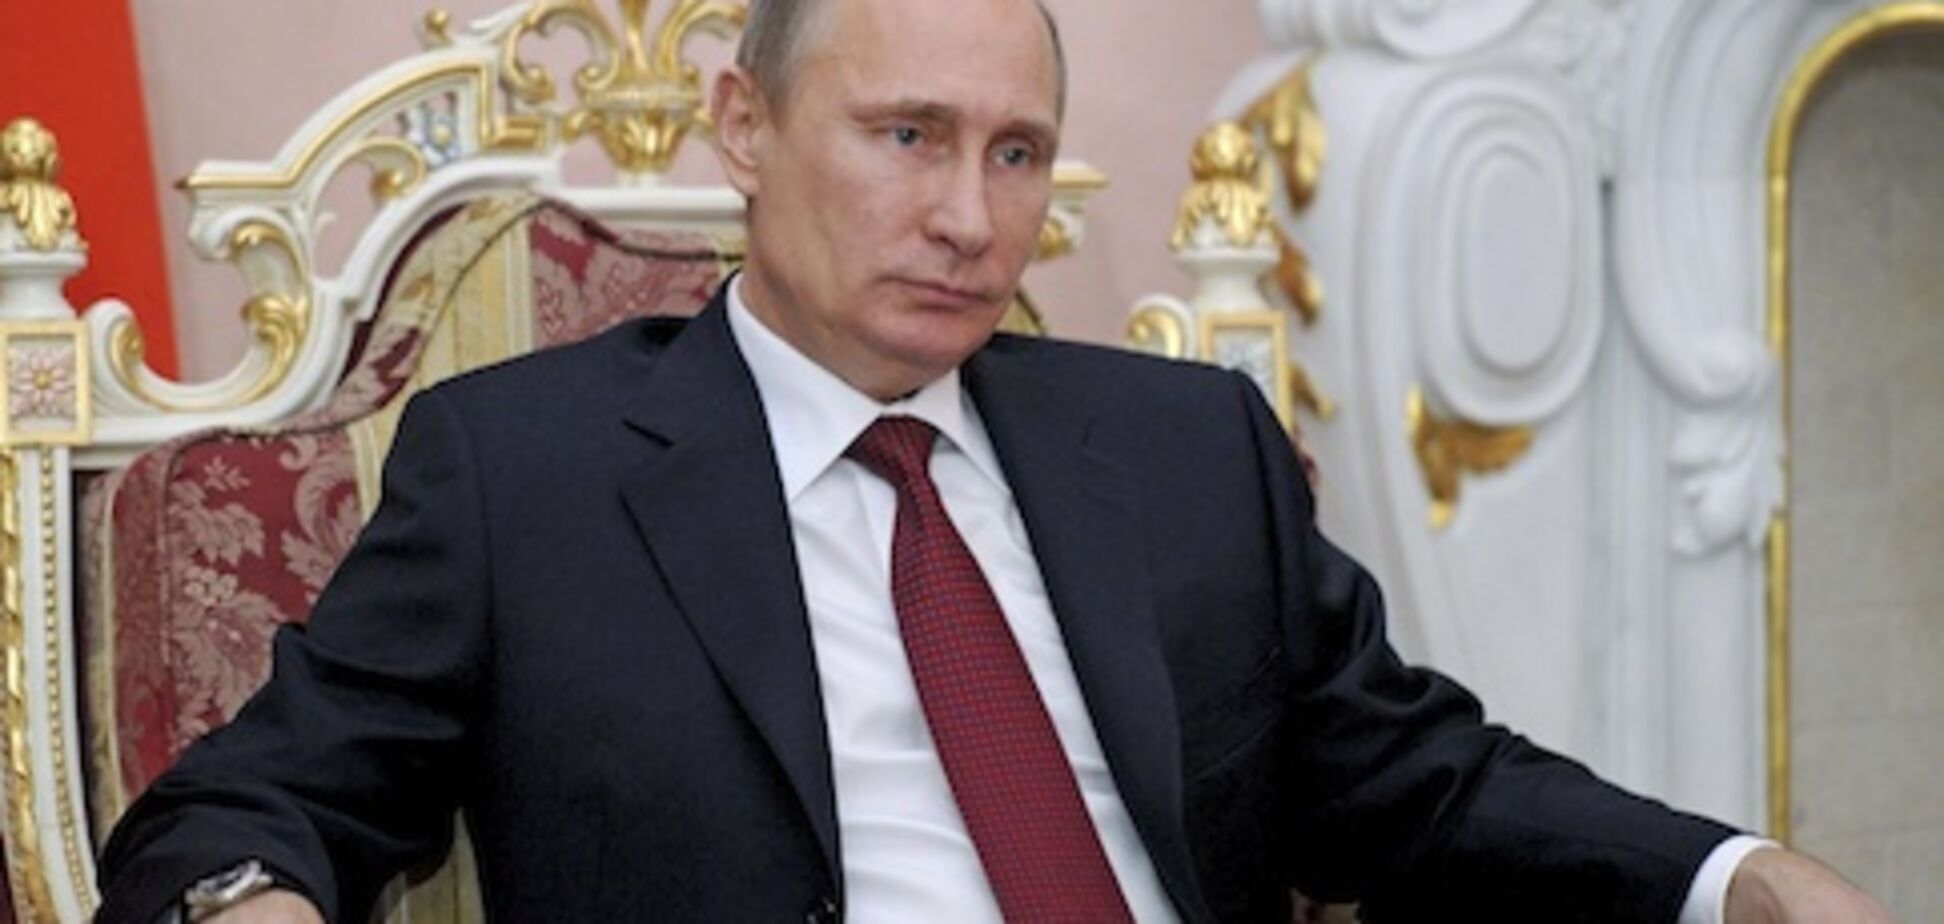 Дуже комплексує: Путін приїхав до Лукашенка на величезних каблуках